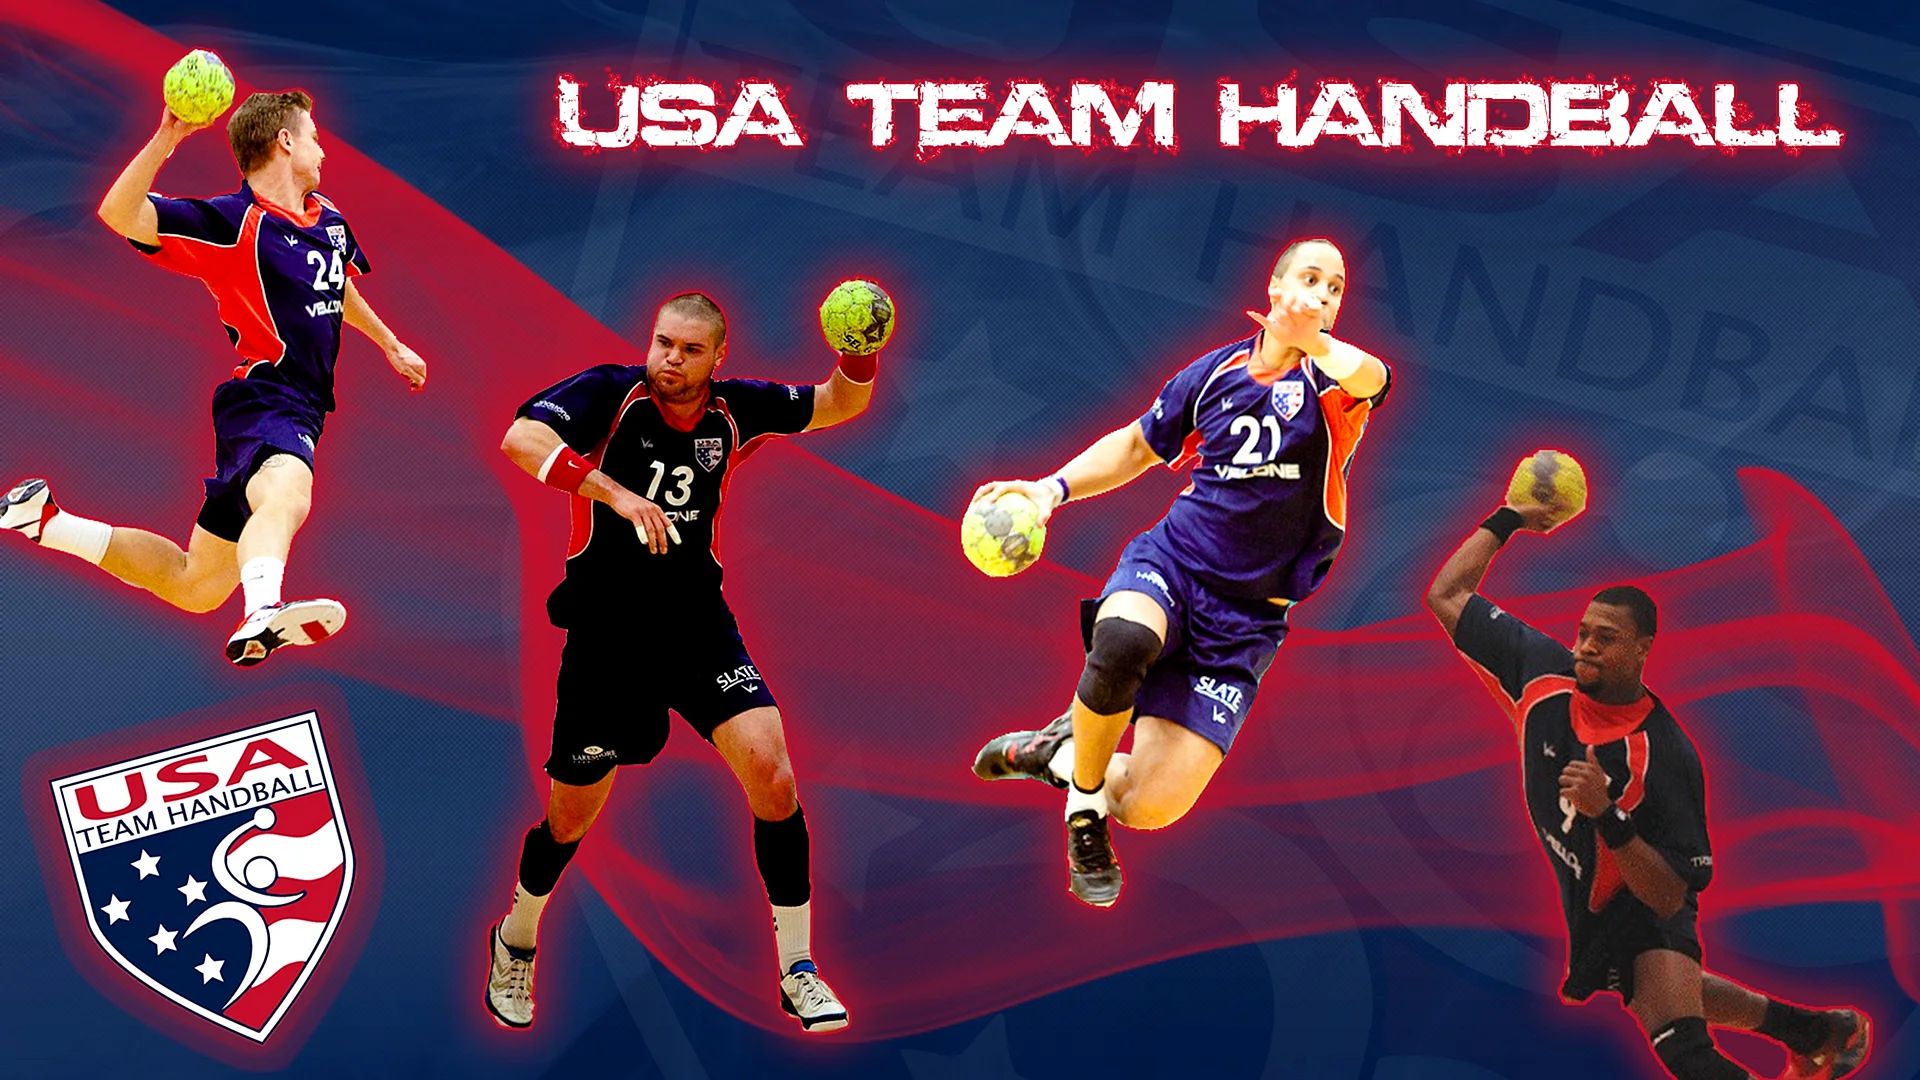 Handball Wallpaper